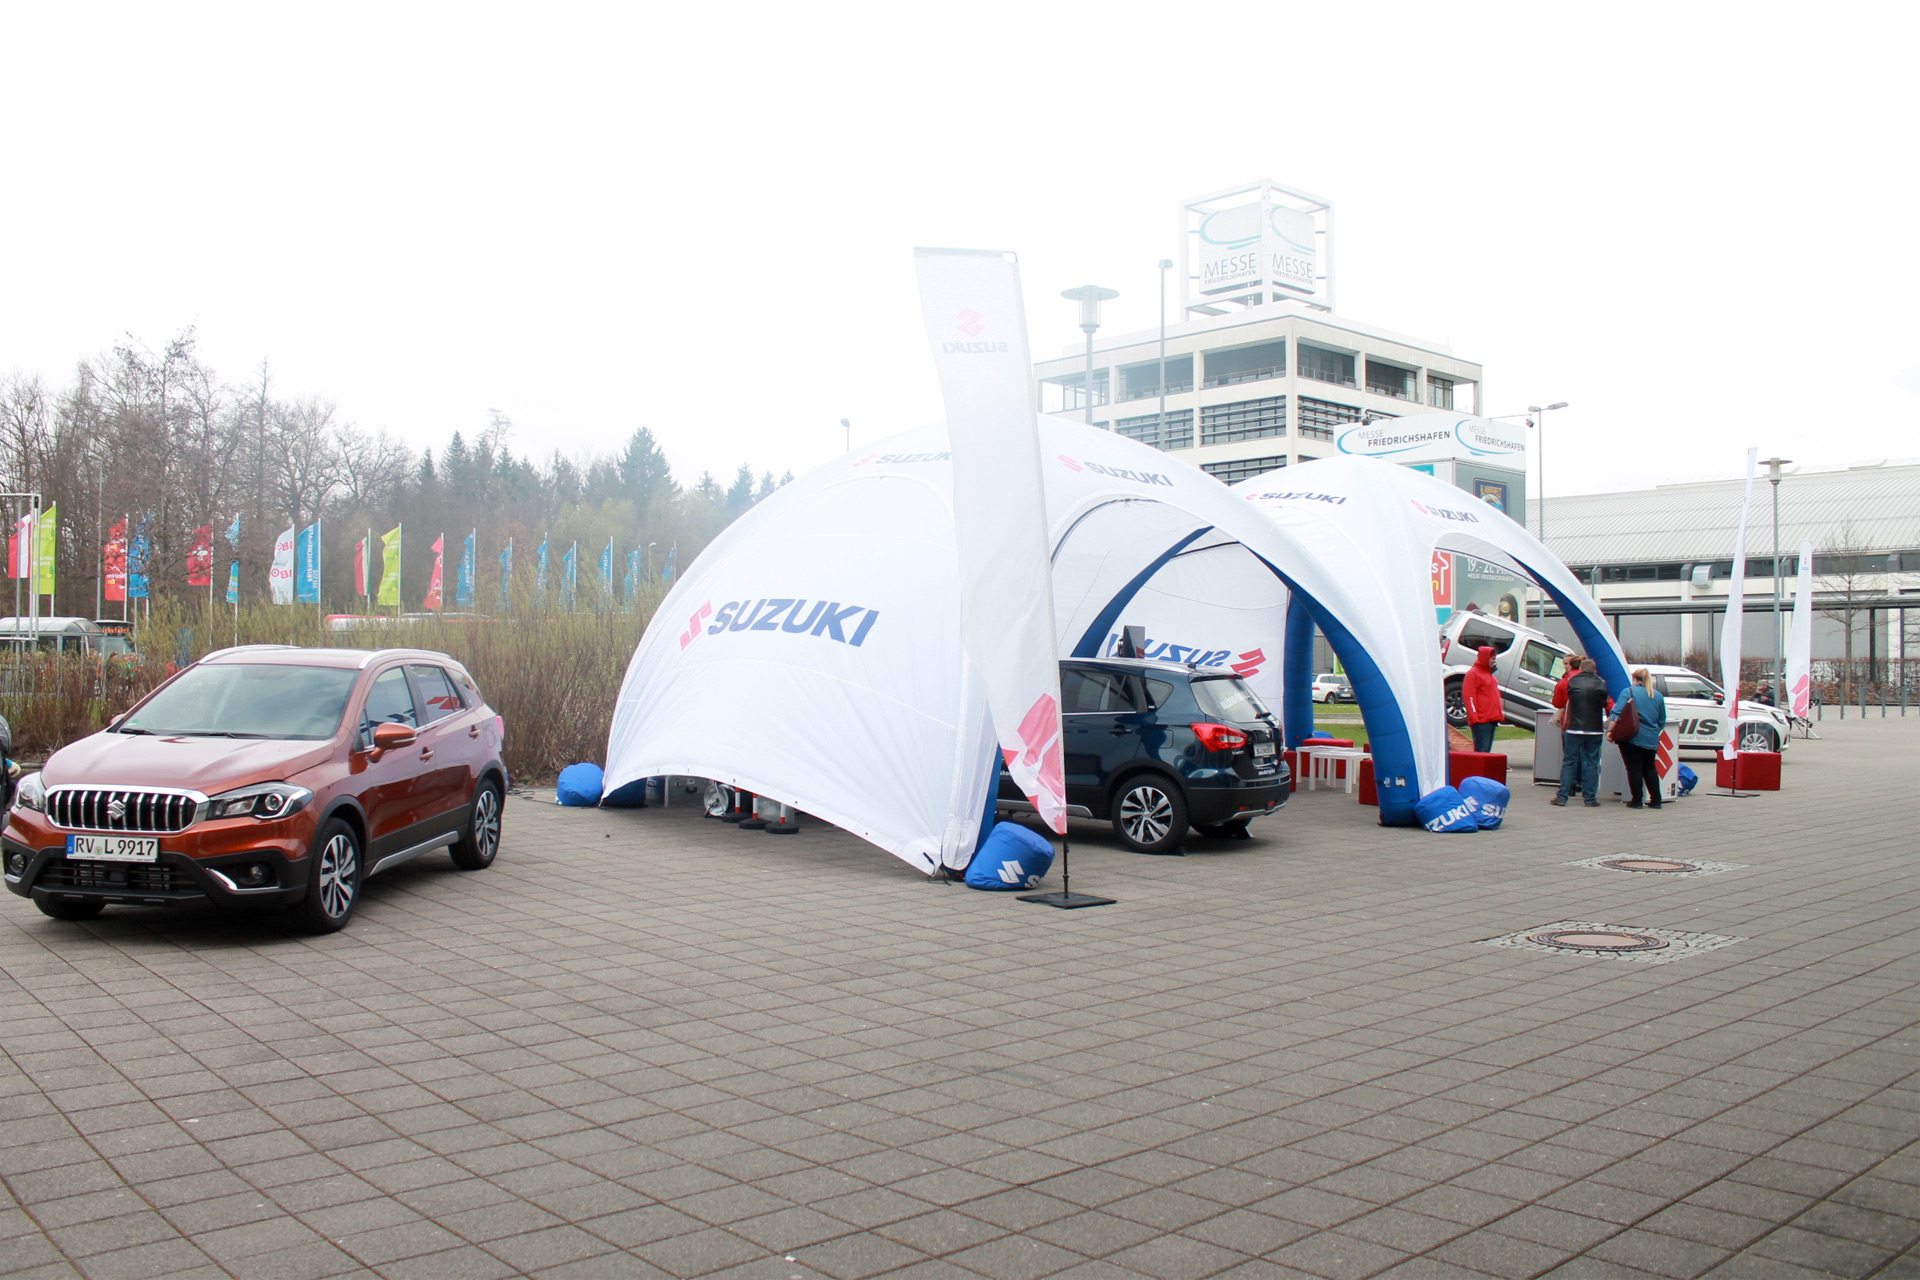 Suzuki Roadshow Allrad für alle – Friedrichshafen